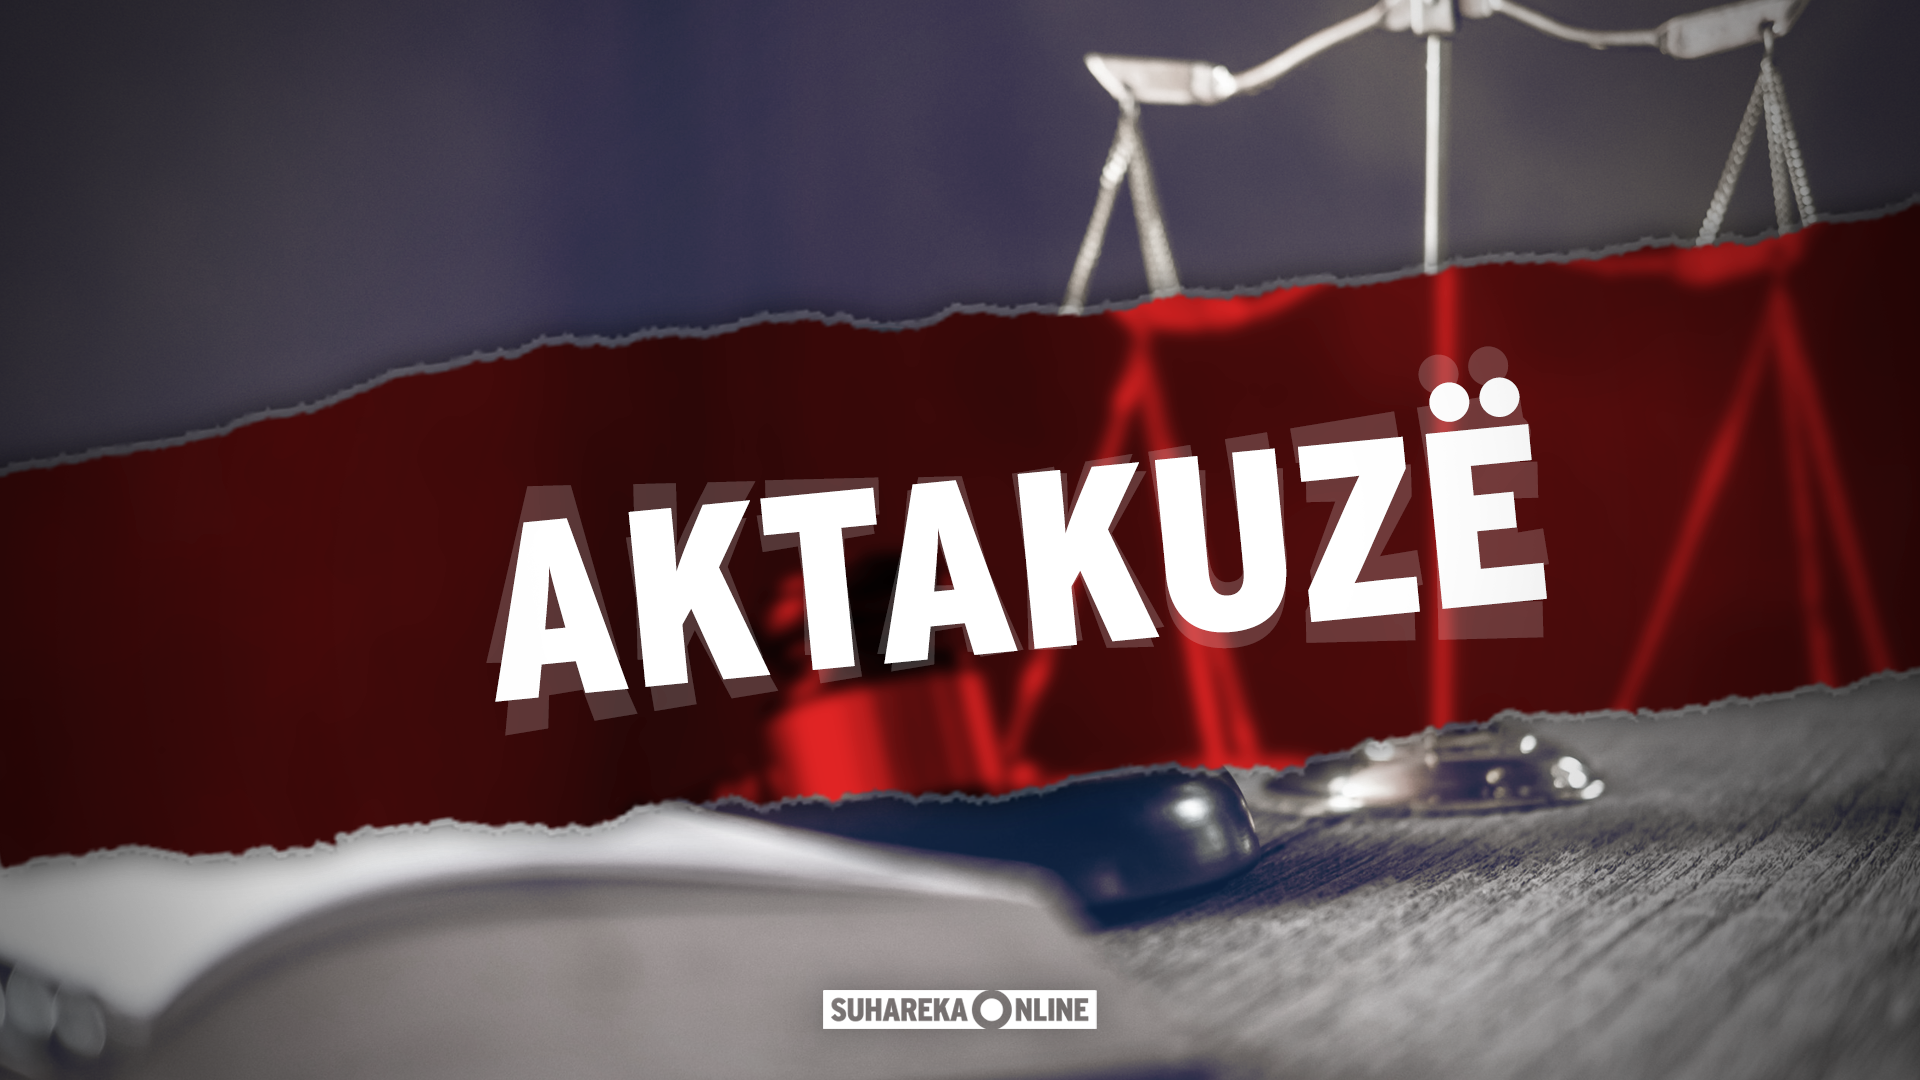 Prokuroria e Prizrenit ngrit 8 aktakuza kundër 9 personave dhe kërkon paraburgimin e 4 të tjerëve